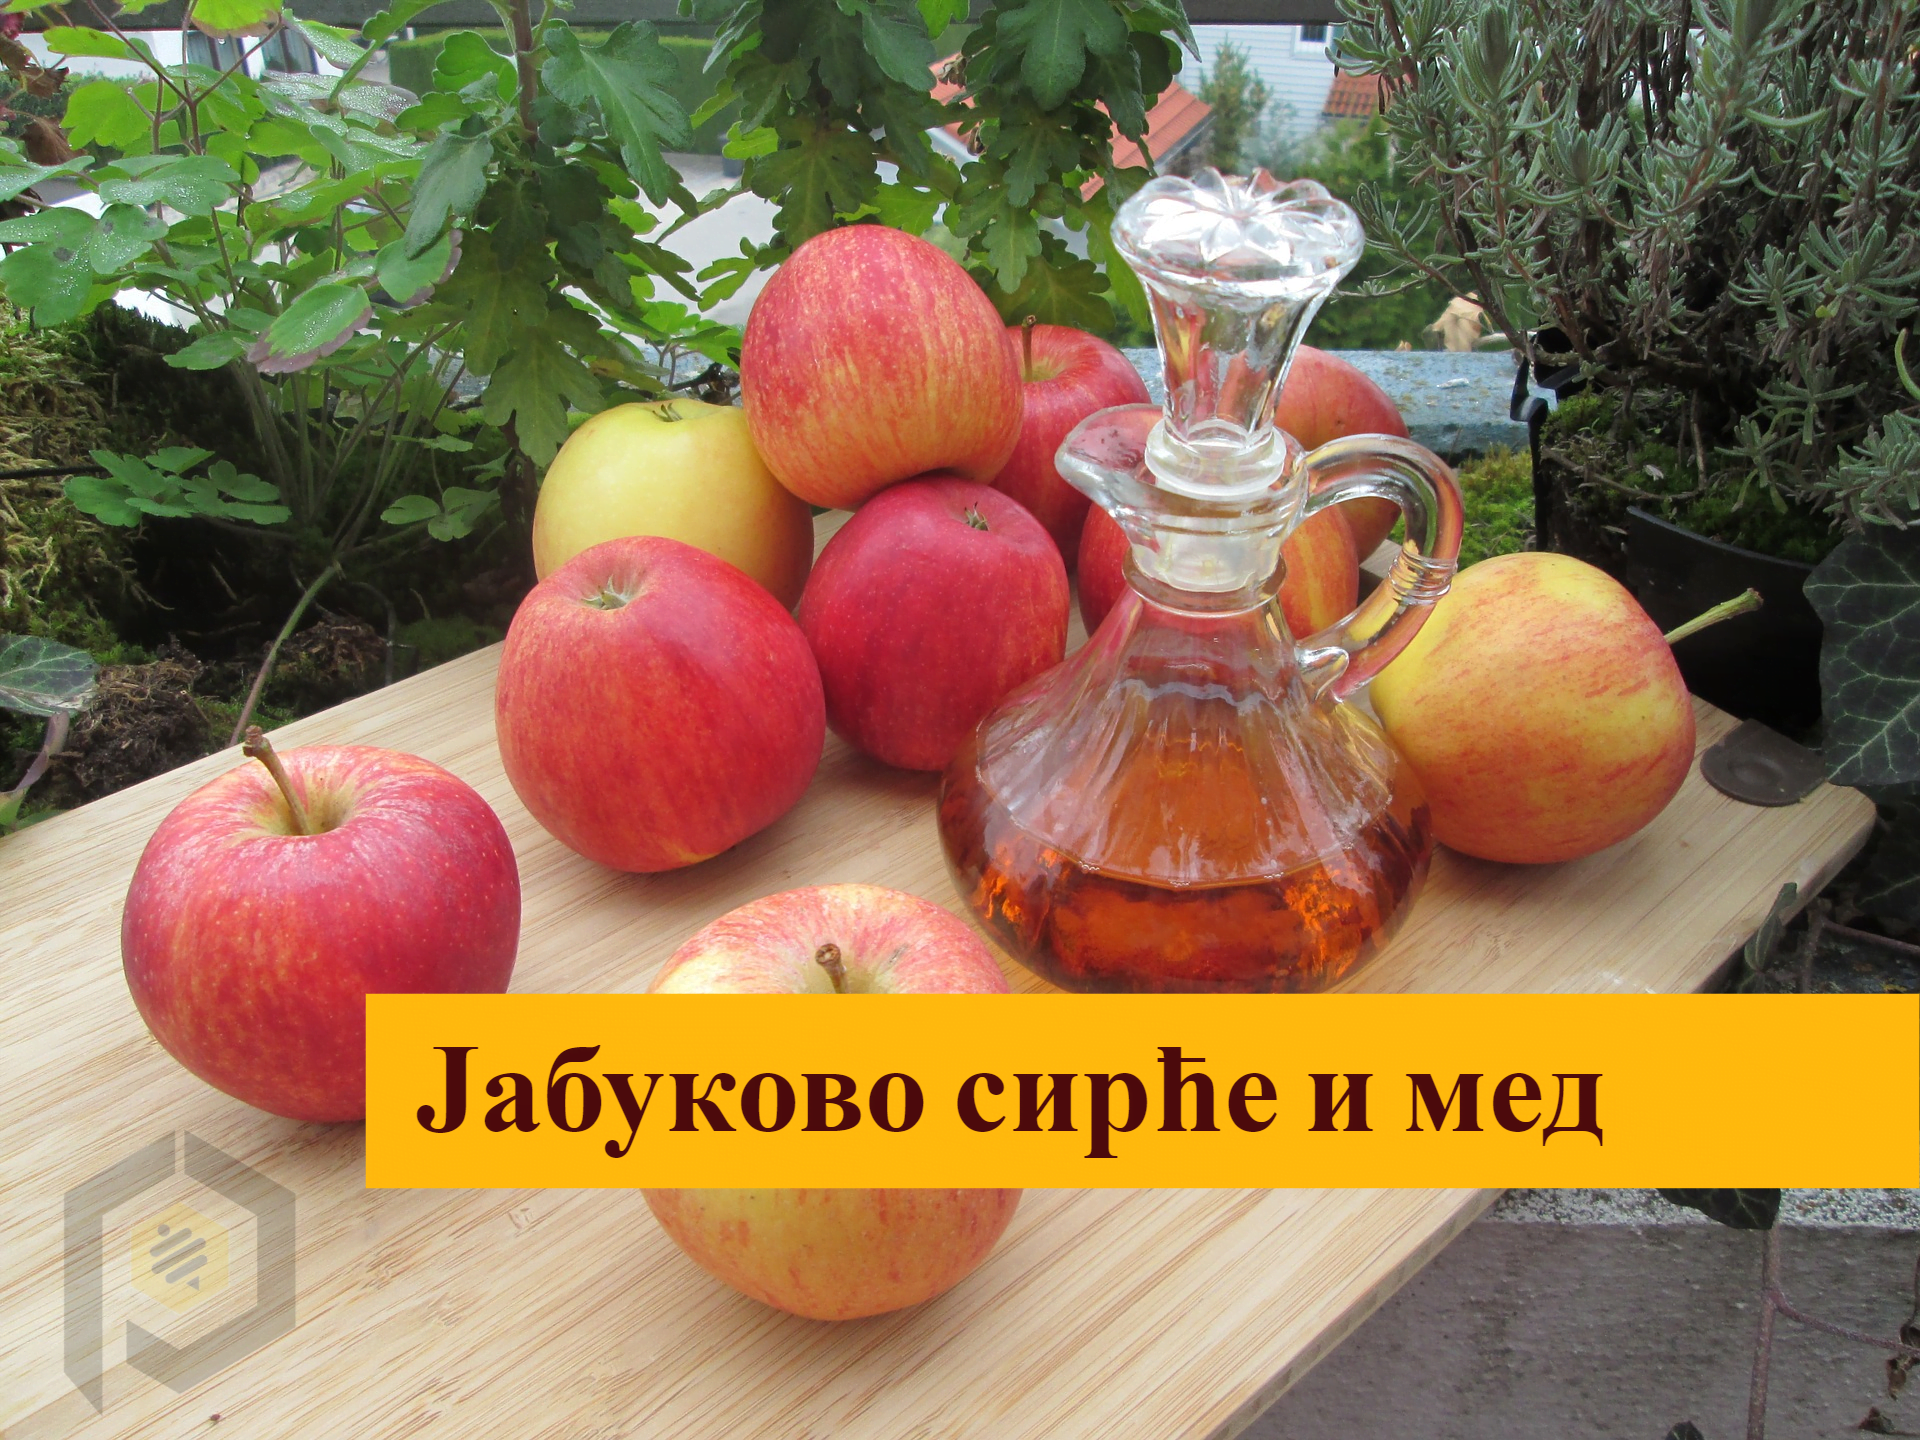 apples 1008880 1920 - Јабуково сирће и мед